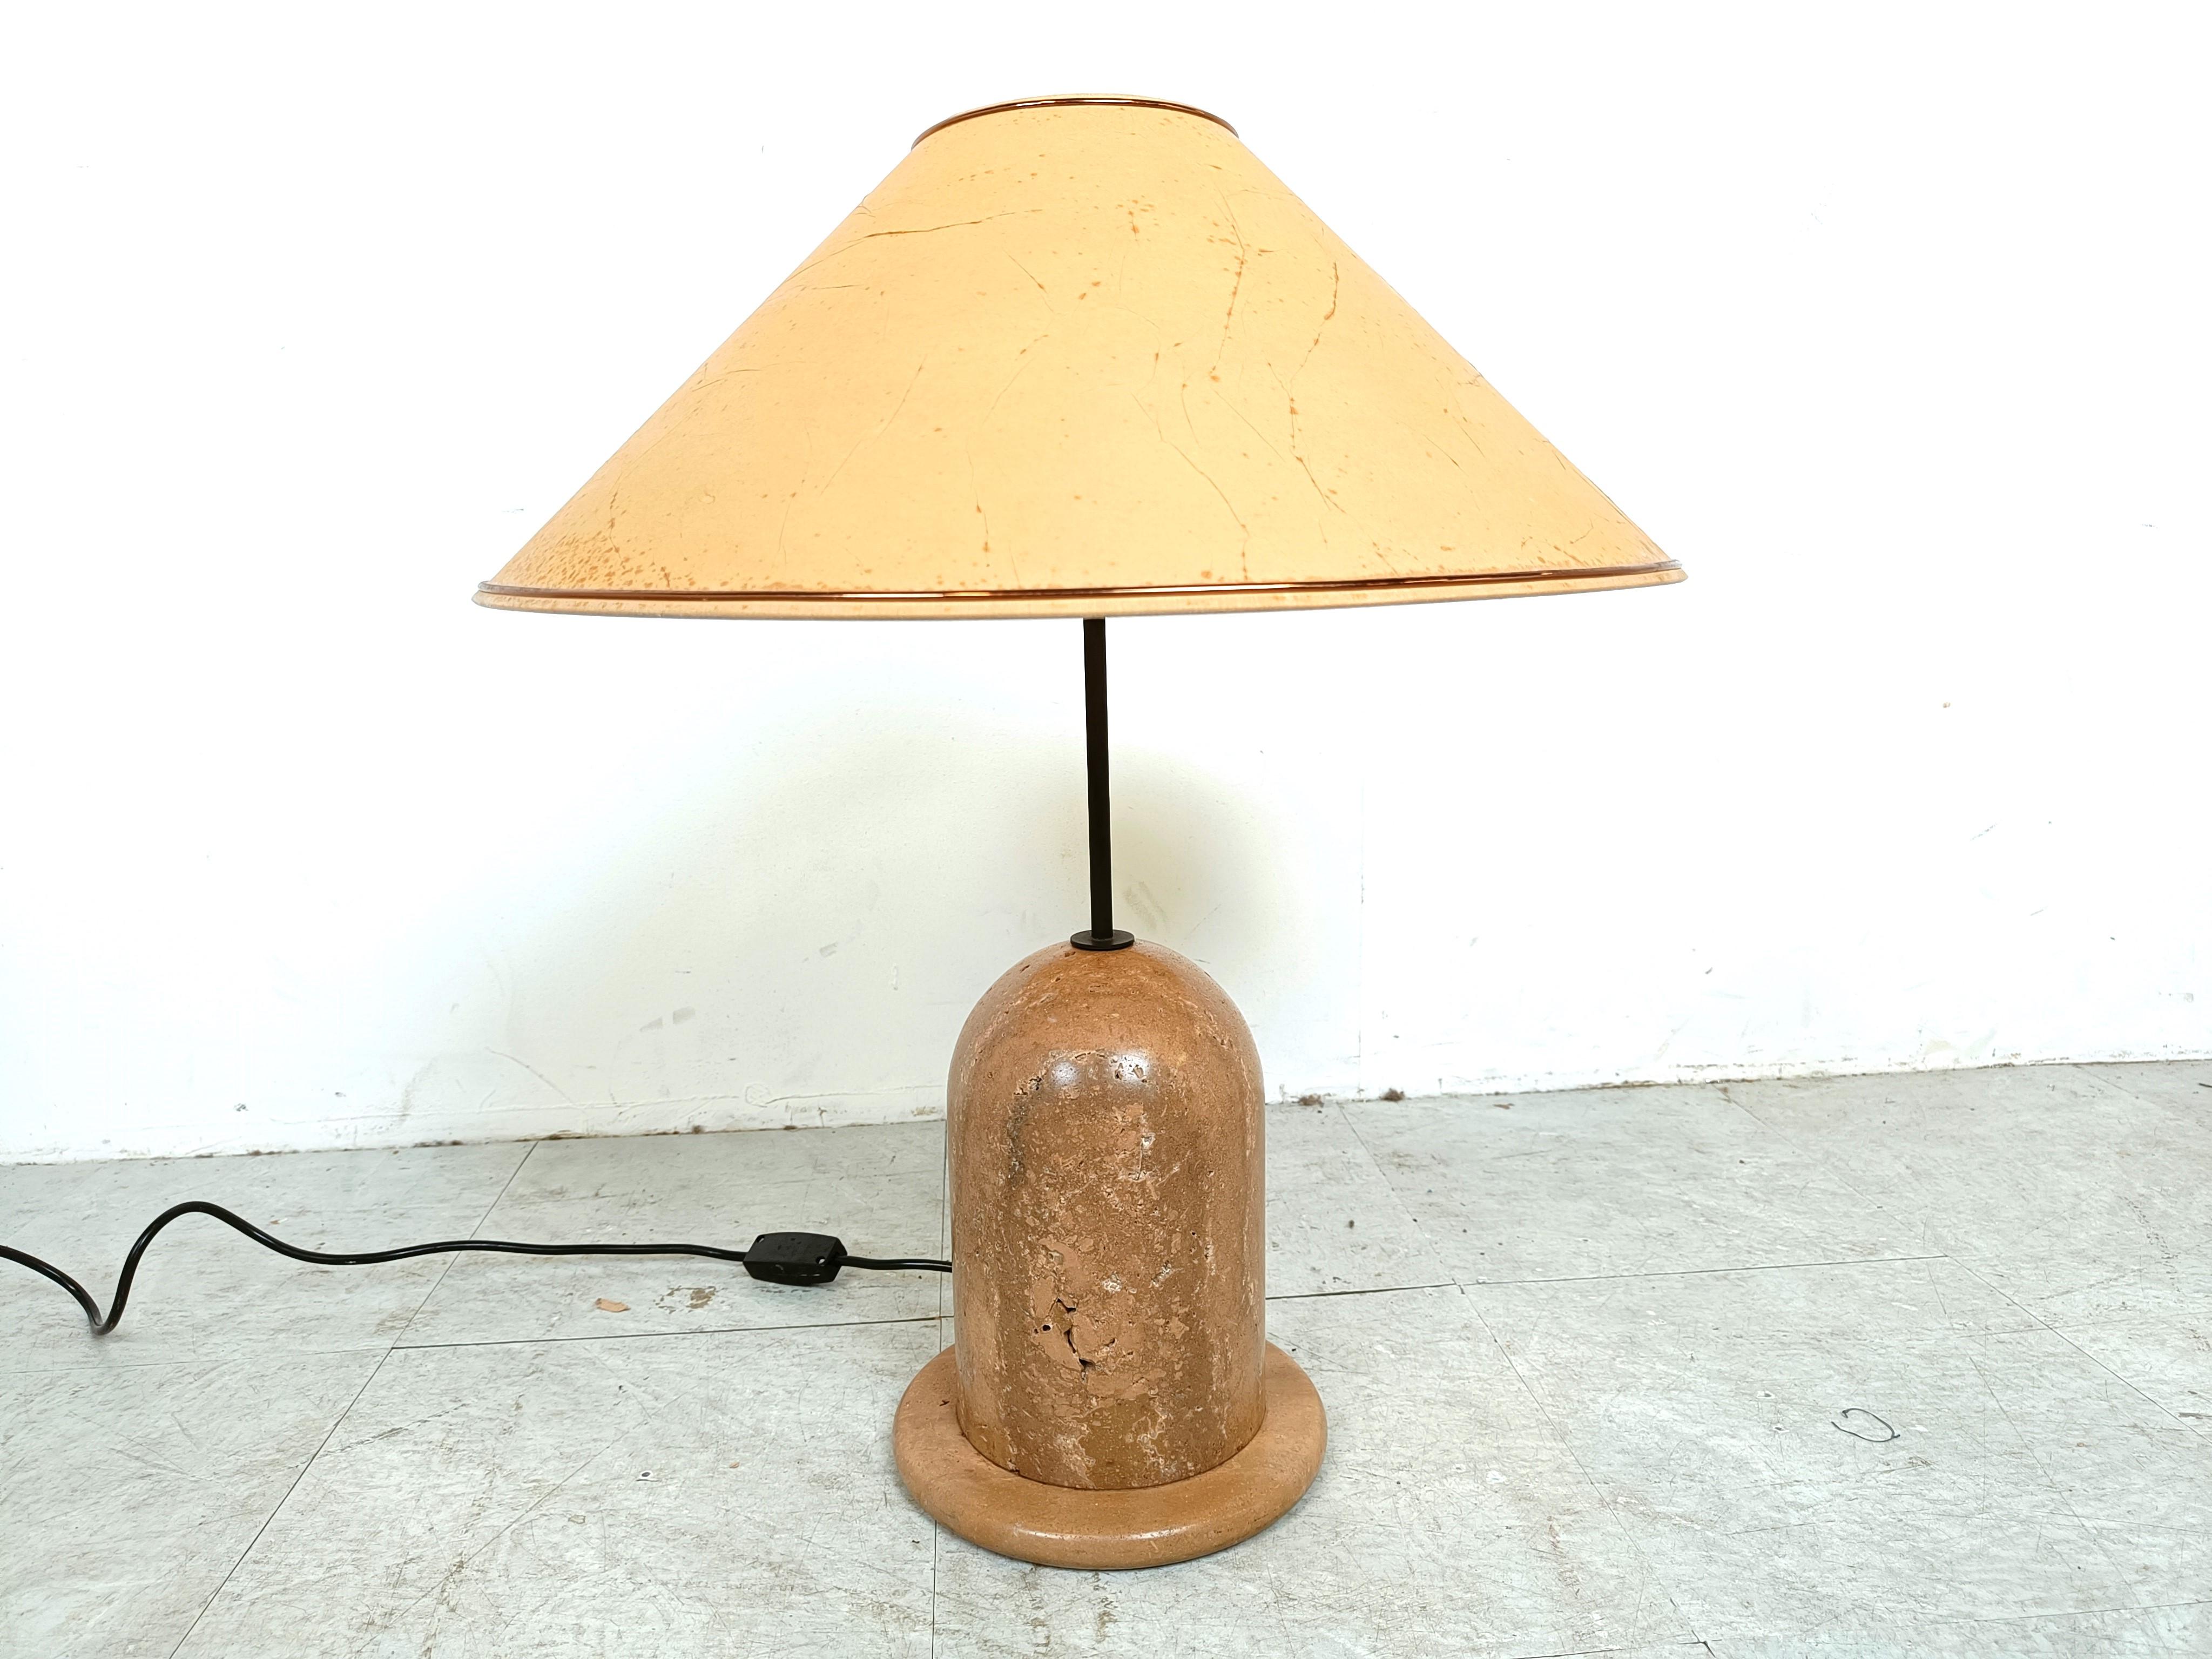 Charmante Tischlampe aus poliertem massivem Travertin mit dem originalen Lampenschirm aus den Siebzigern.

Guter Zustand, getestet mit einer E27-Glühbirne

Abmessungen:
Höhe 60cm/23.62